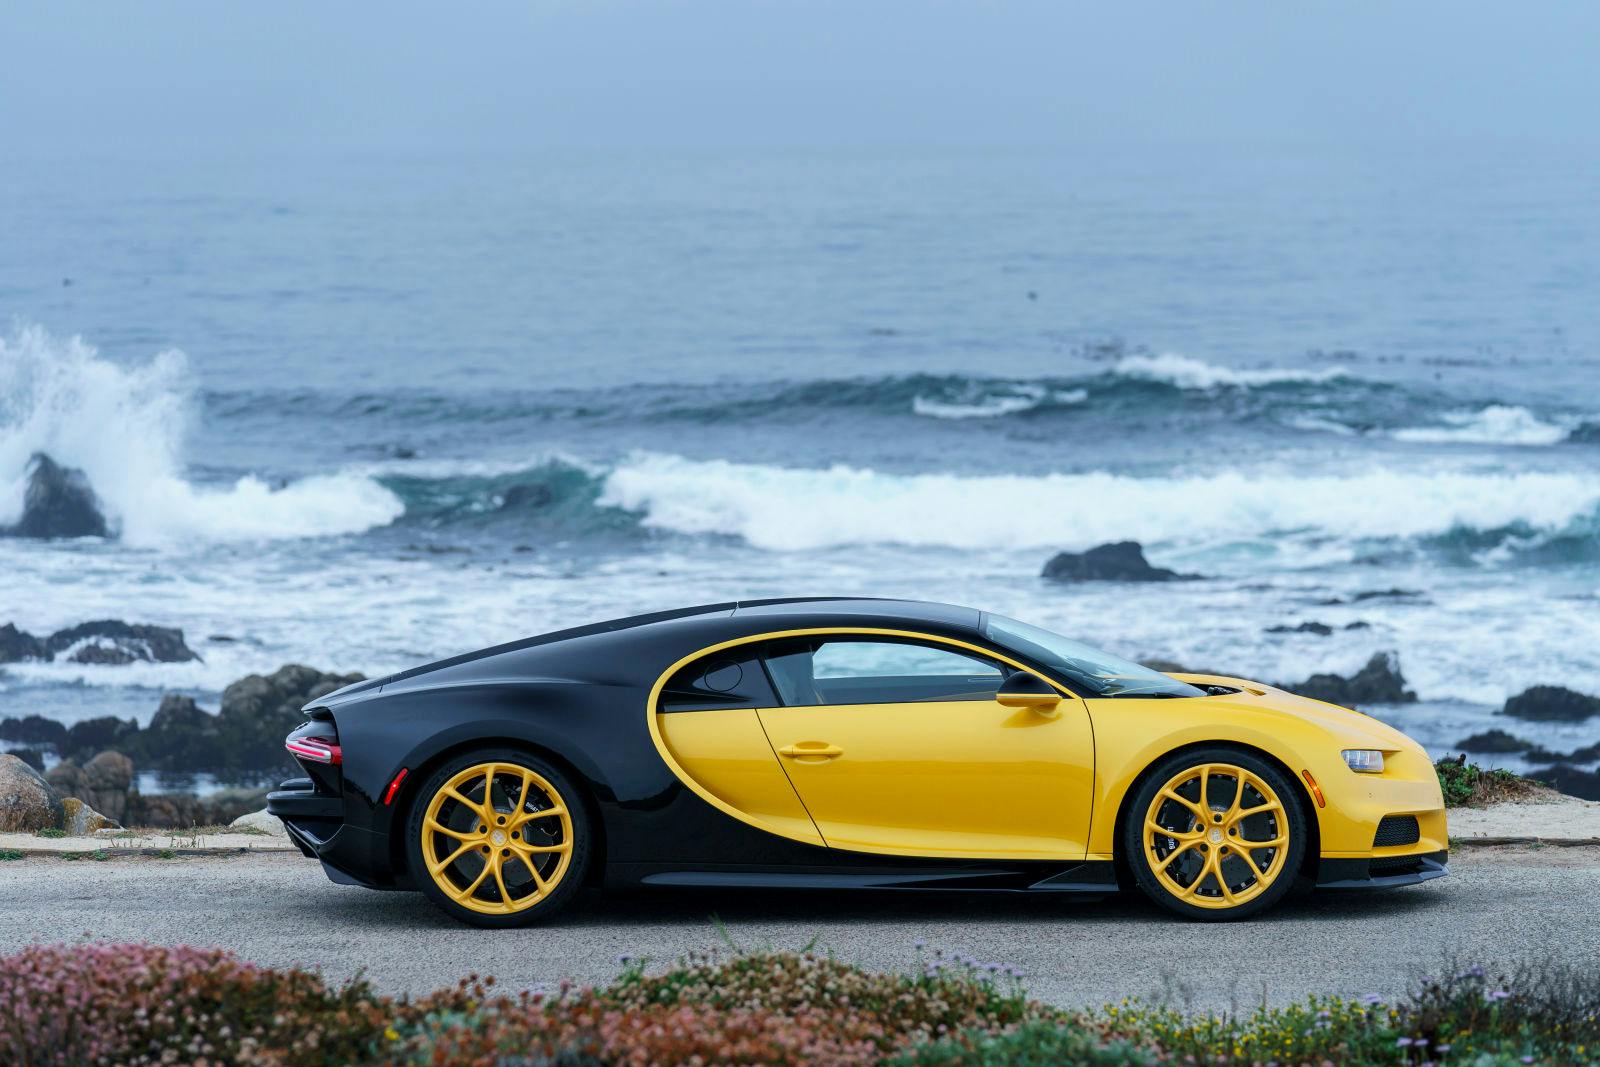 La toute première Bugatti Chiron livrée en Amérique du Nord arborait une association saisissante de carbone jaune et noir.